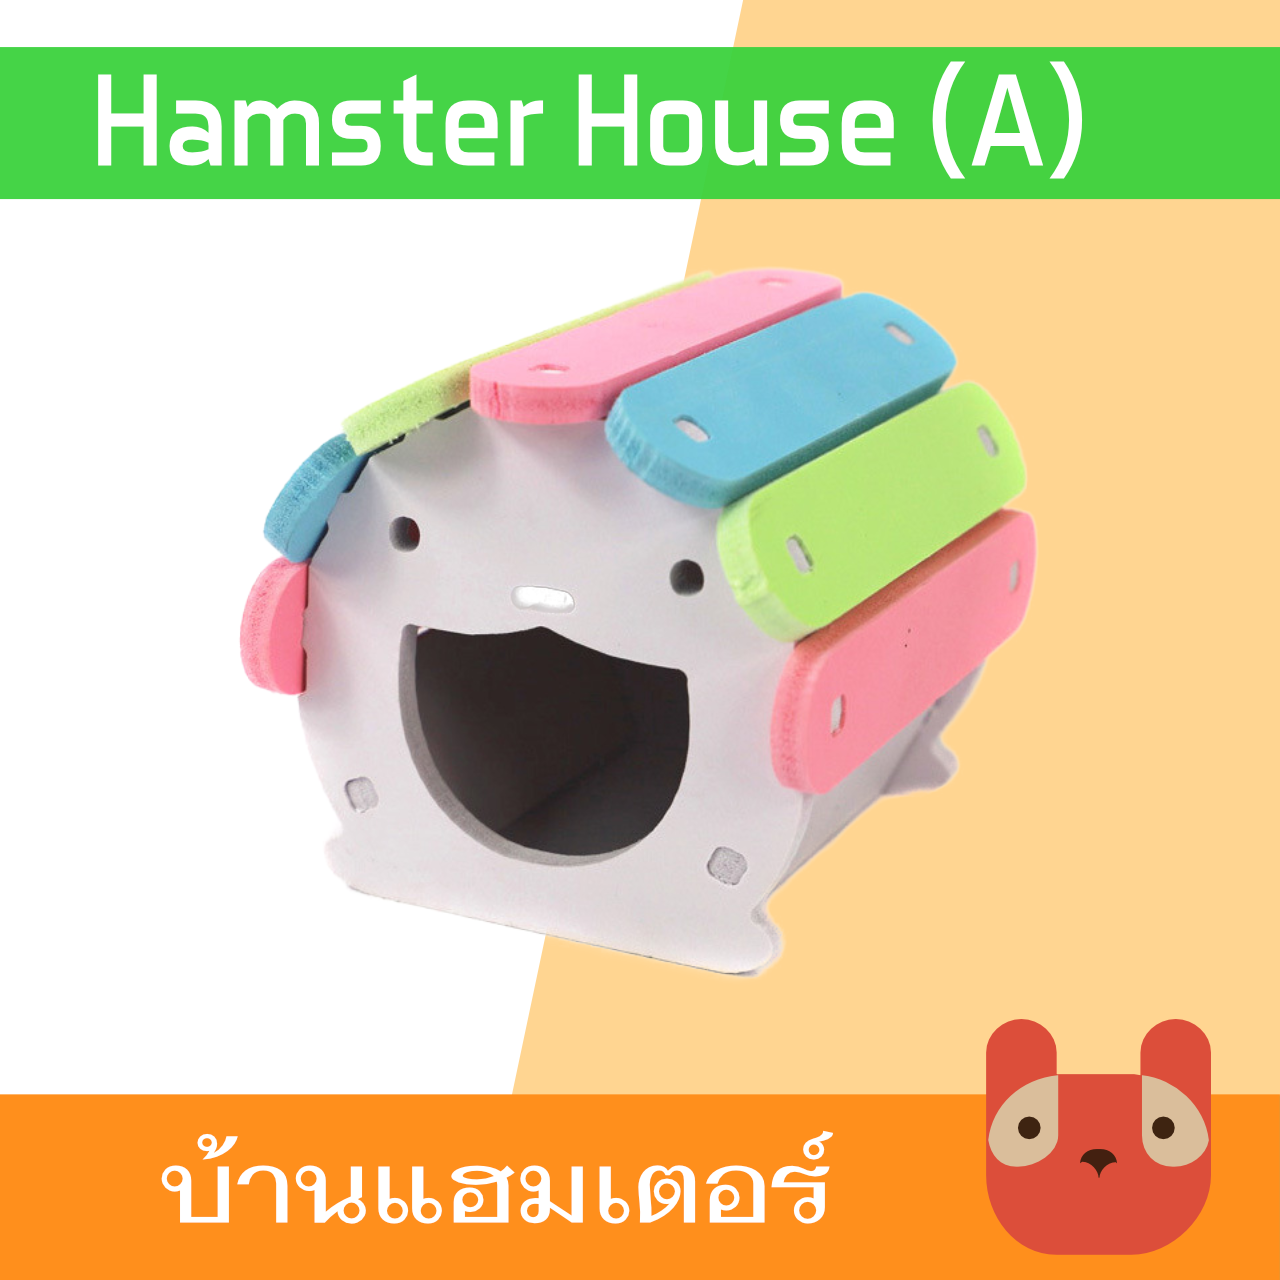 บ้านแฮมสเตอร์ ของเล่นแฮมเตอร์ (A) บ้านหมี HA01